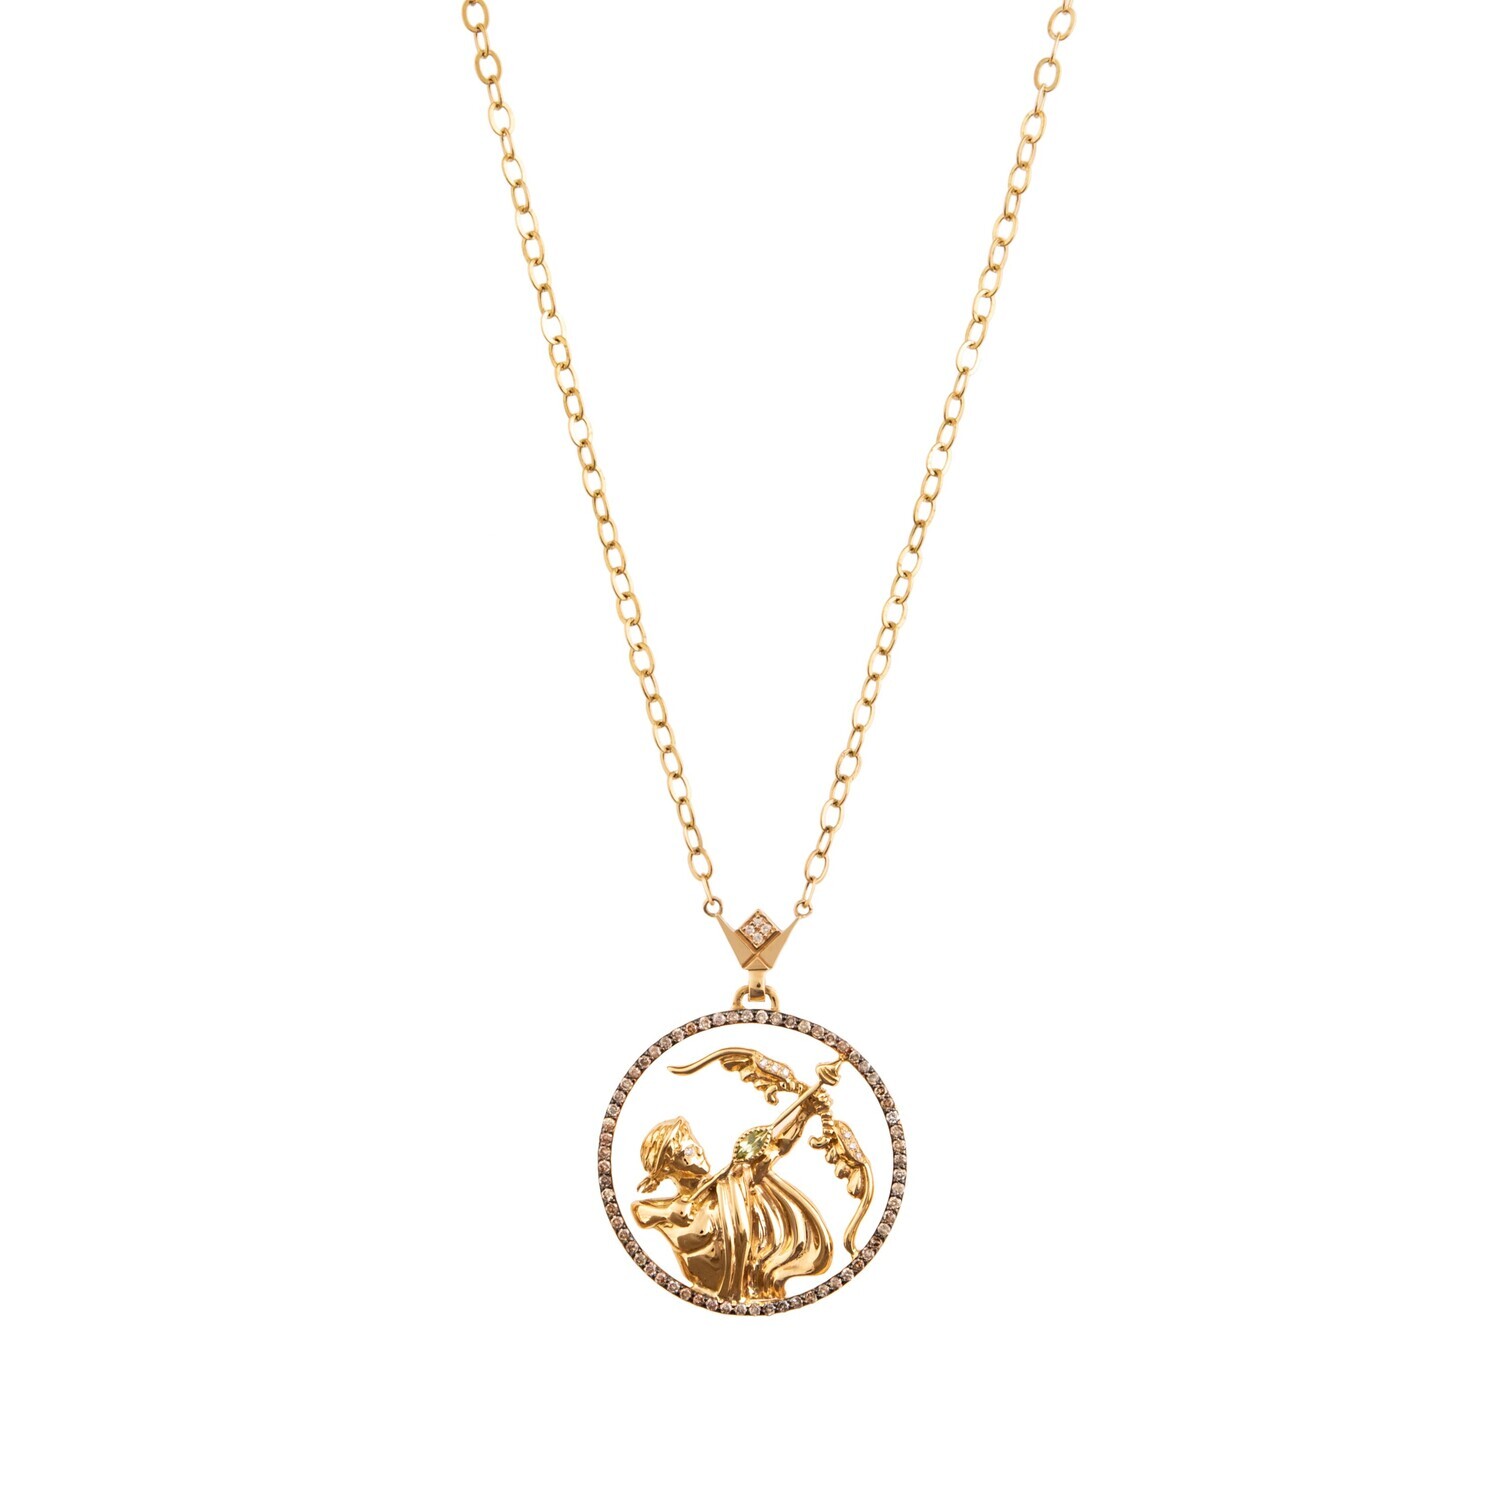 Zodiac Diamond Necklace Sagittarius with Brown Diamond and Precious Stone